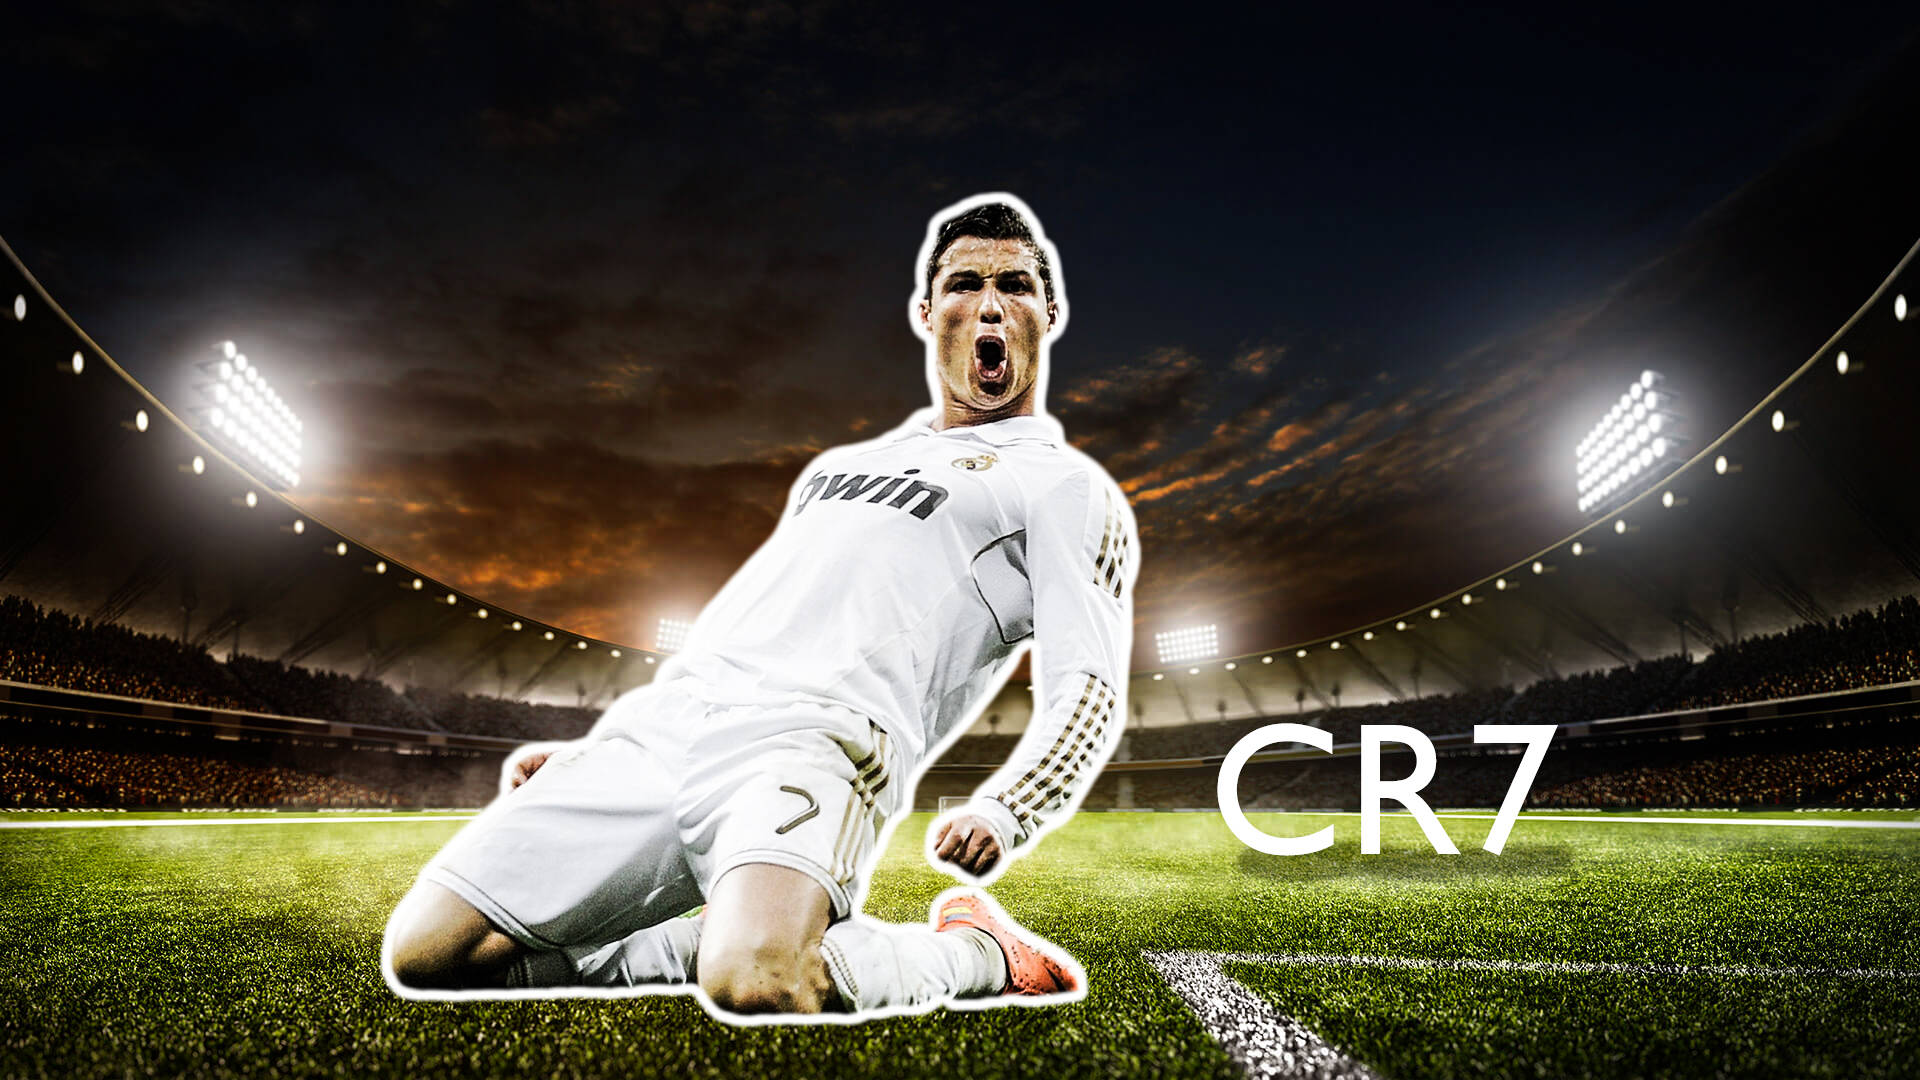 Download Cristiano Ronaldo Cr7 Wallpaper 